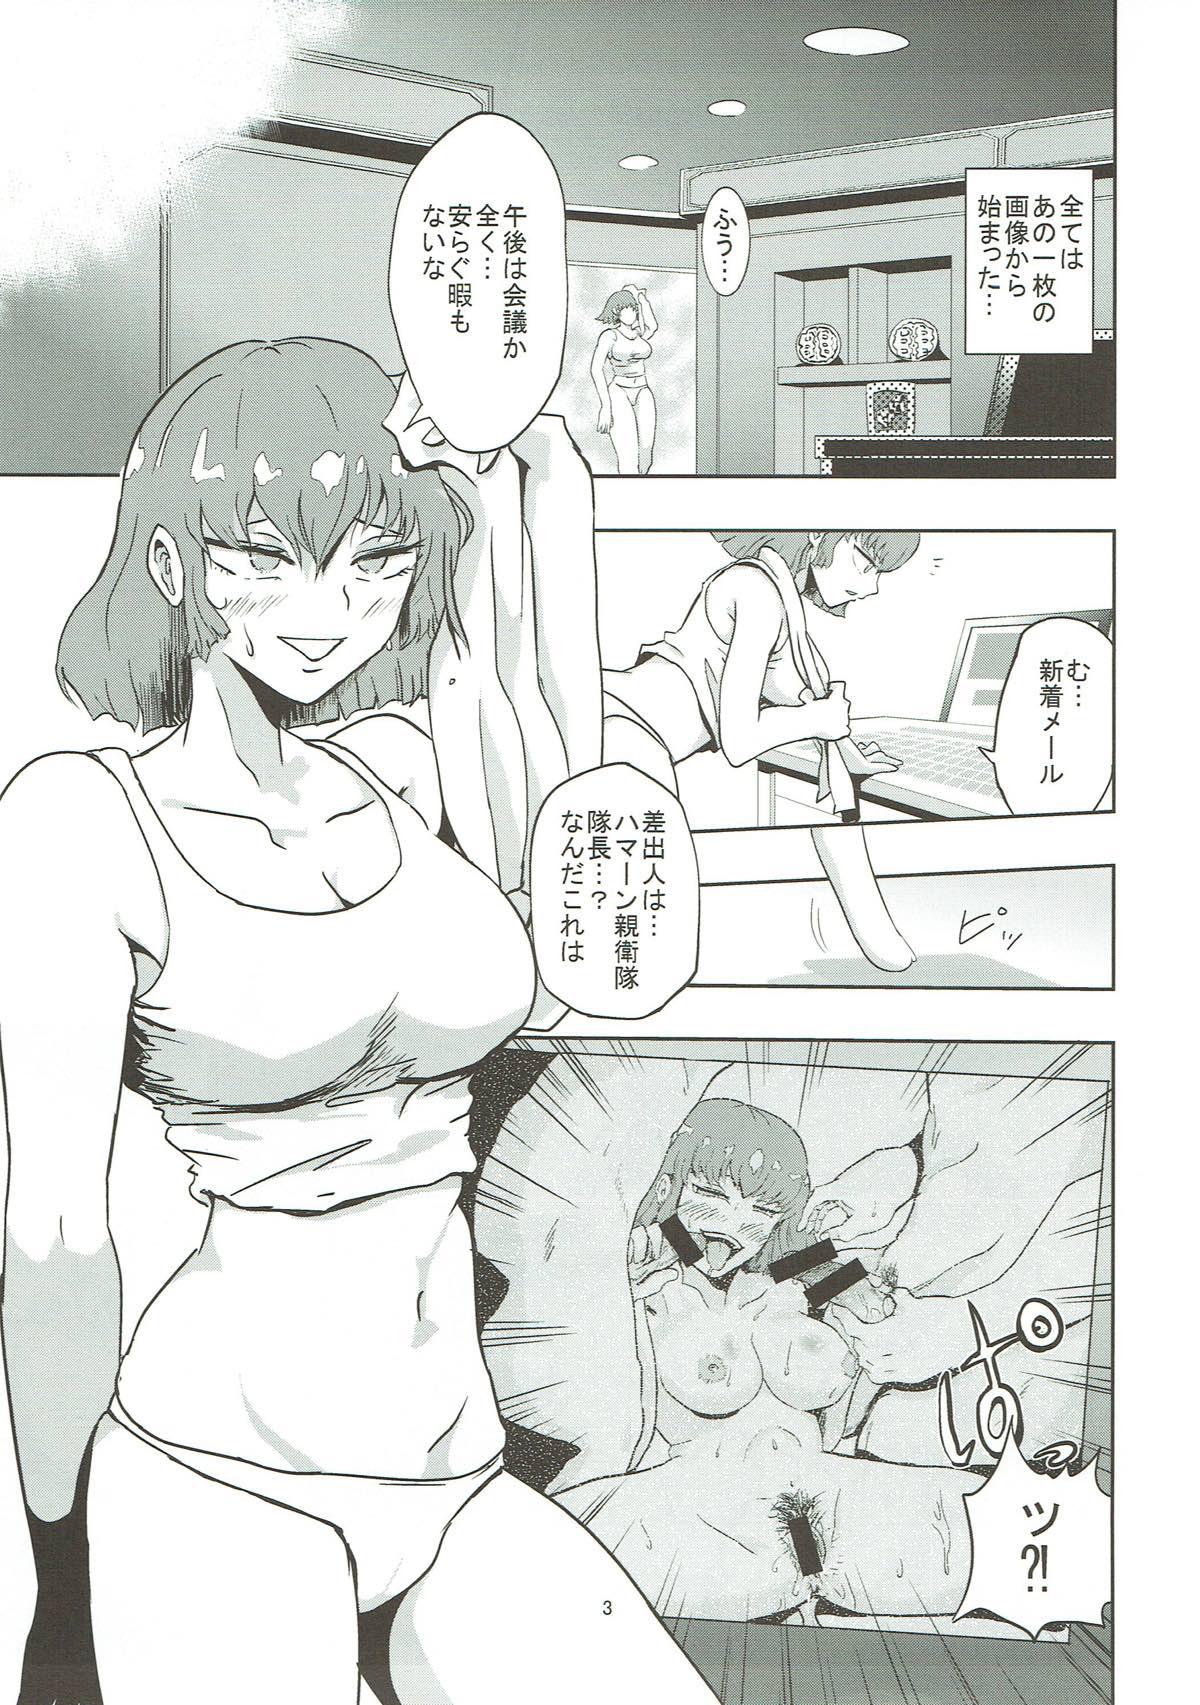 Mulher Haman-sama no Inzoku na Hibi - Gundam zz Home - Page 4